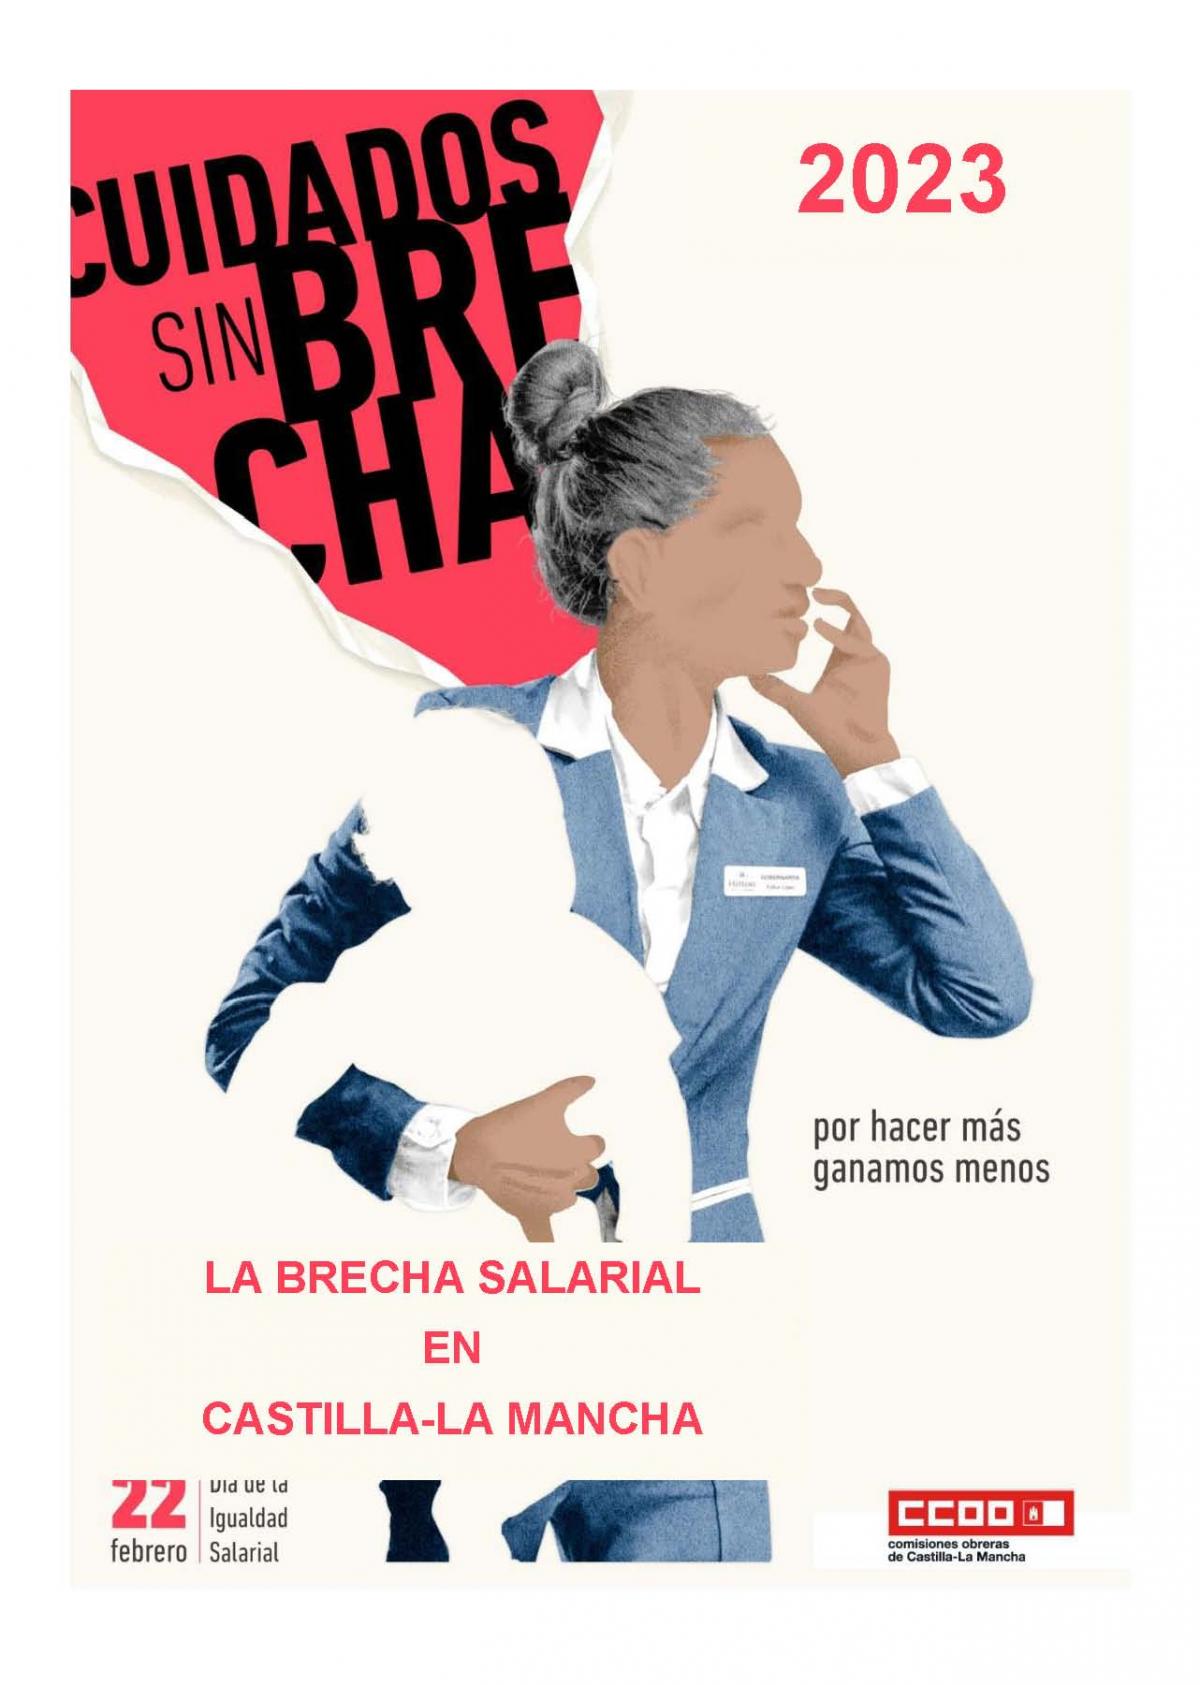 La brecha salarial en Castilla-La Mancha (2023).